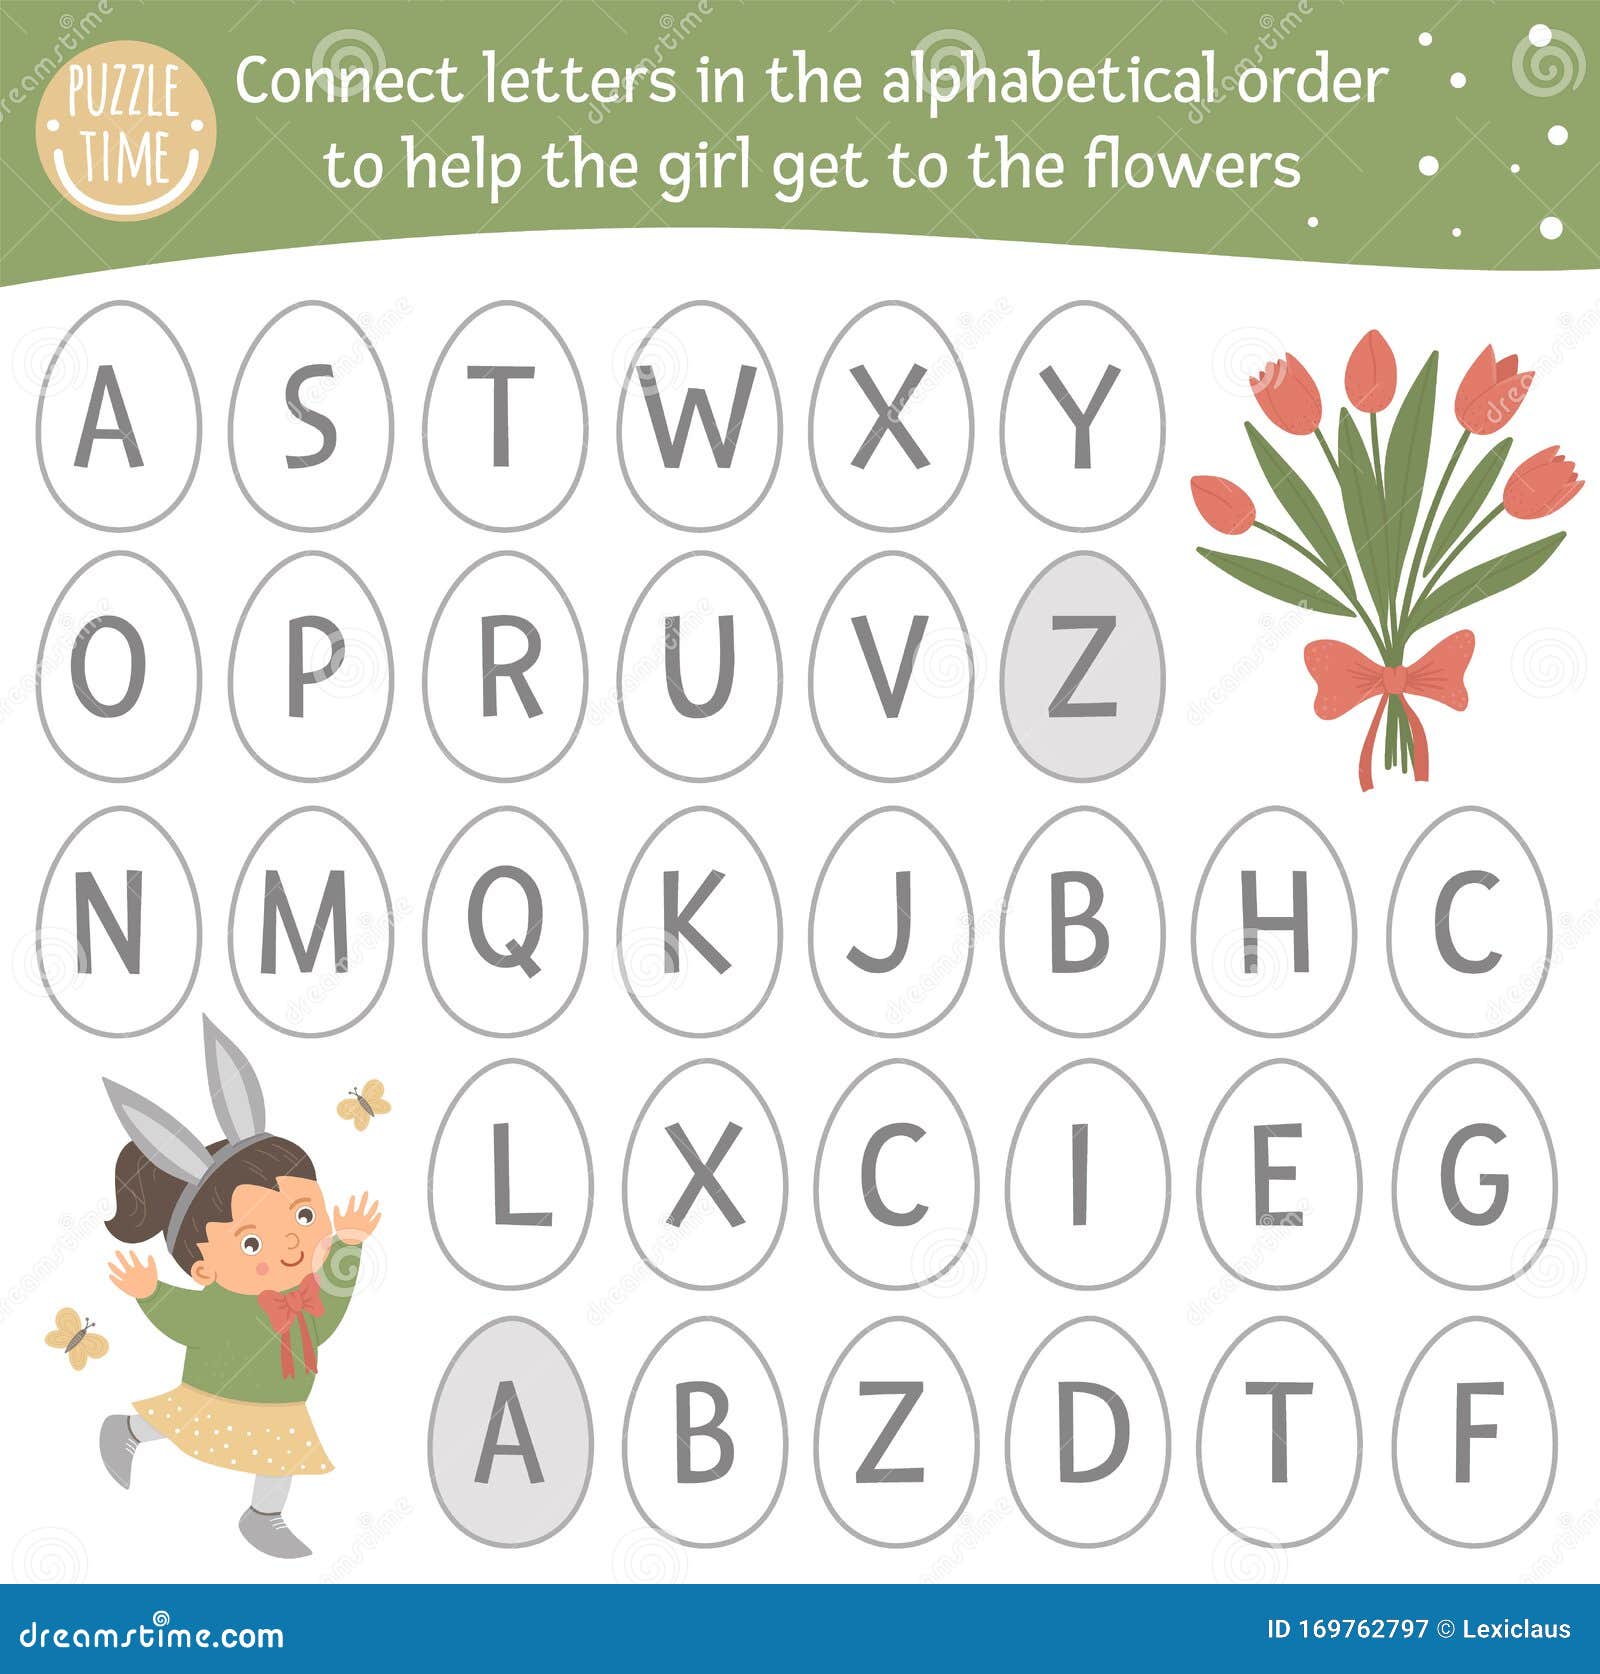 Letra A - ABC Para Crianças - Alfabeto para Crianças / Jogo